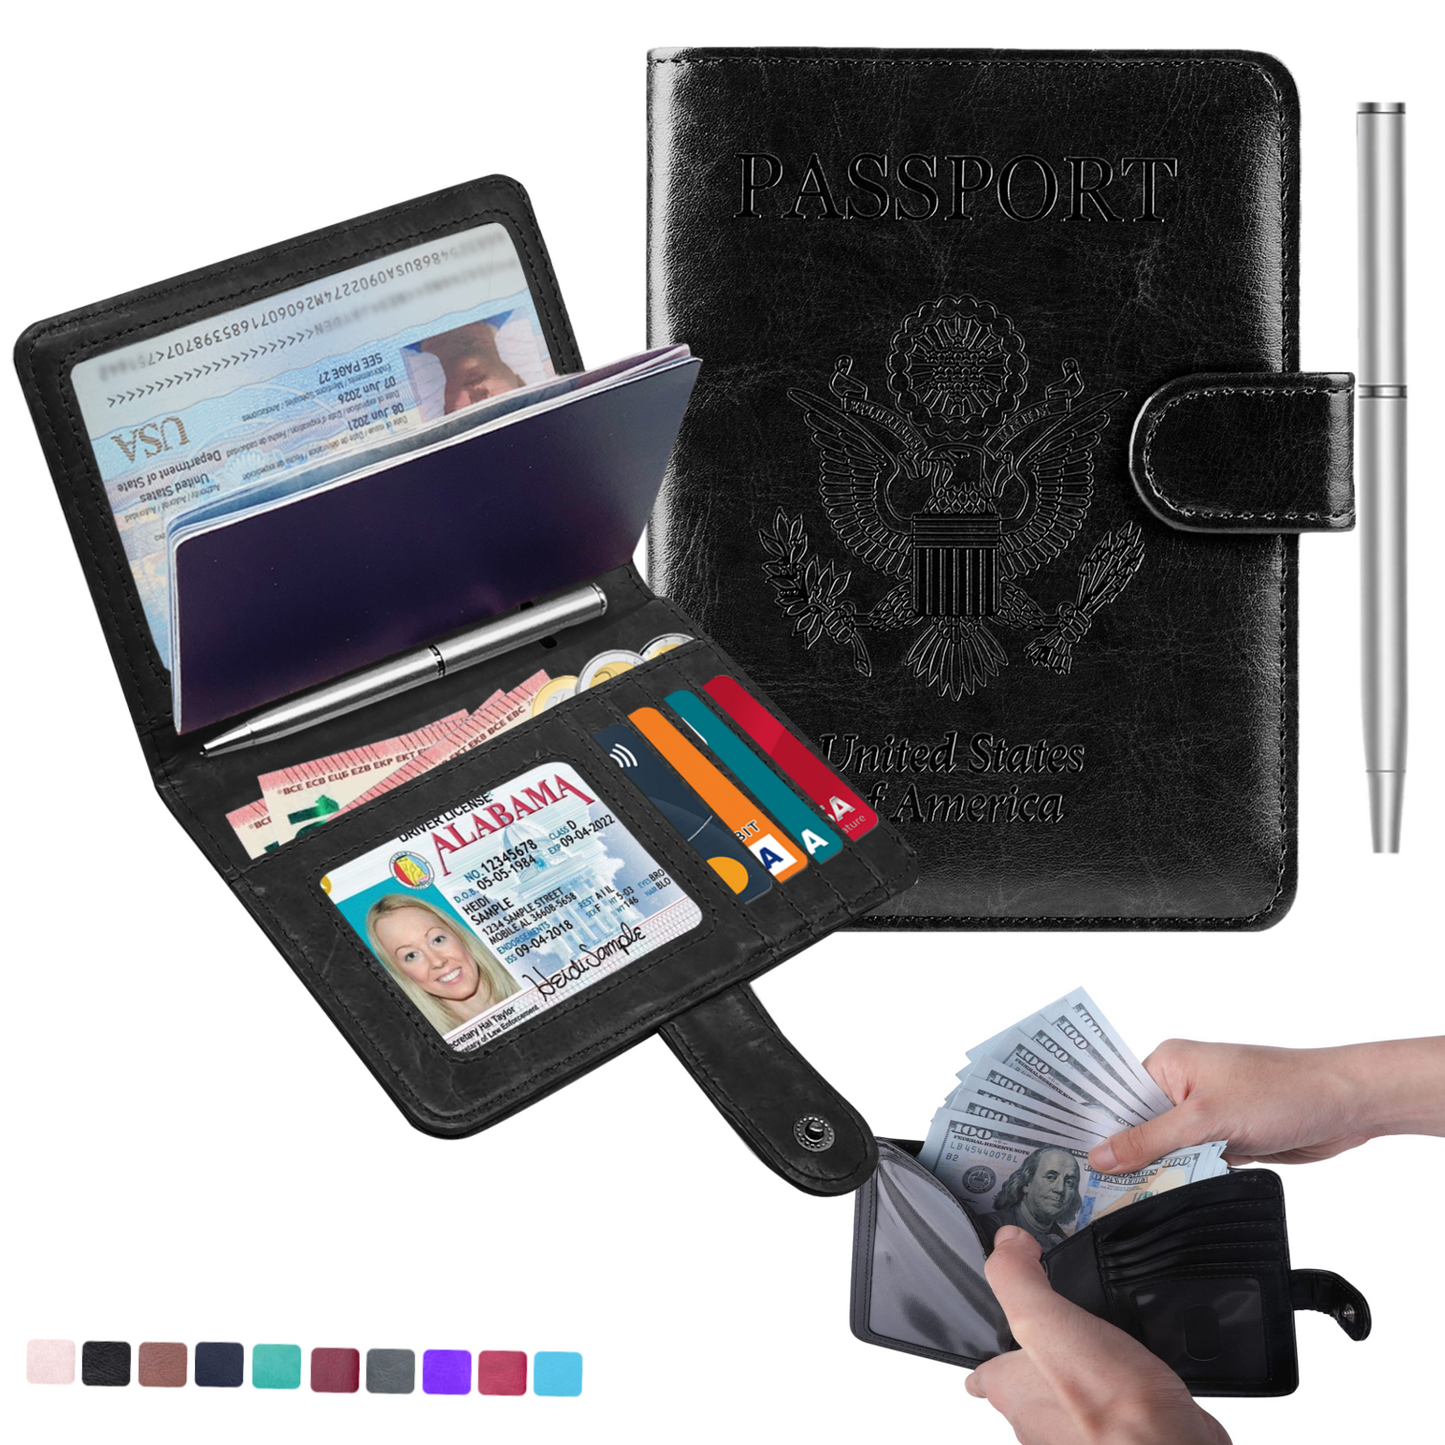 RFID-Blocking Passport Wallet With Large Cash Pocket